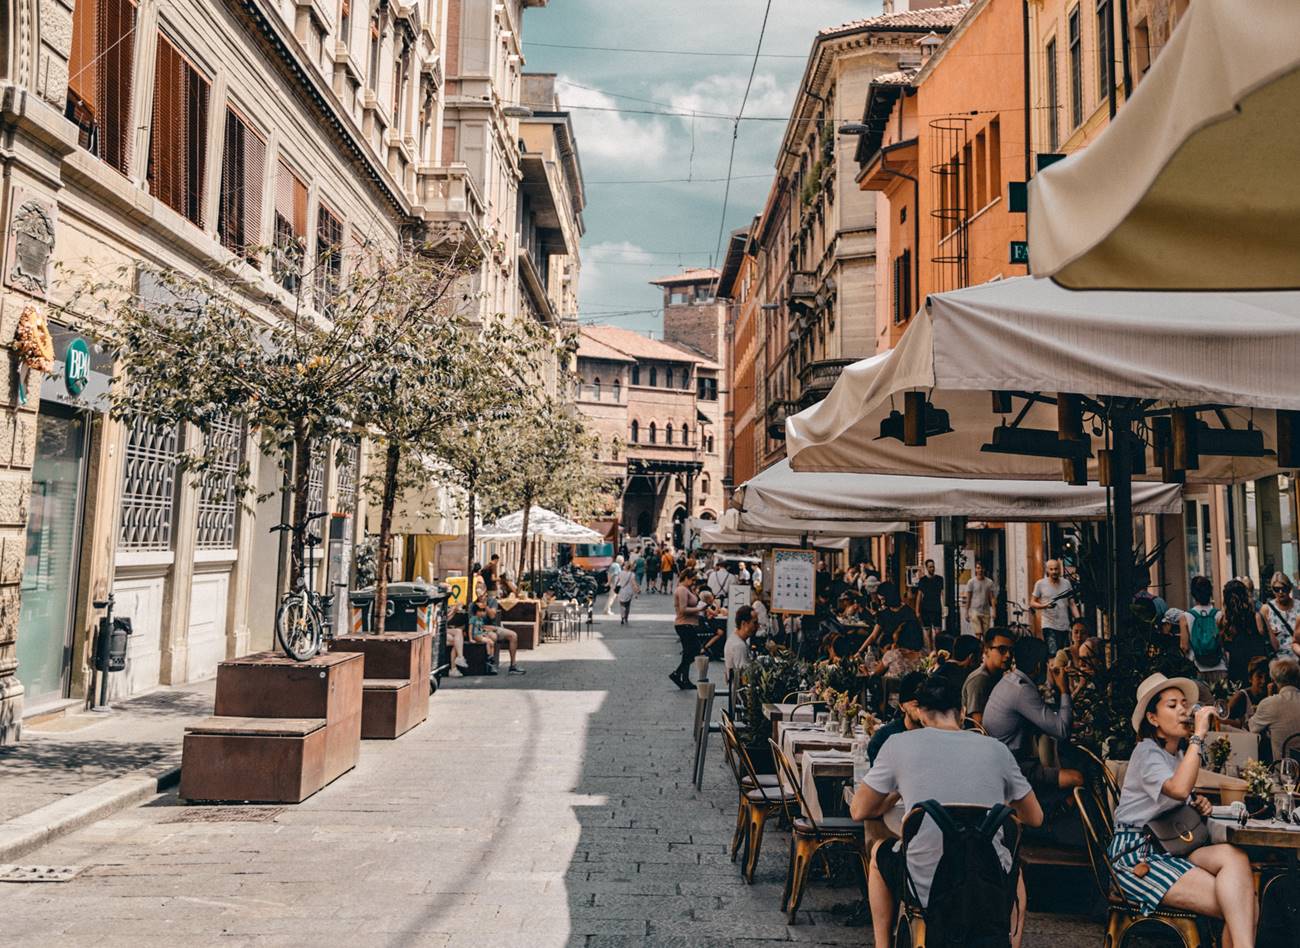 Ovaj grad u Italiji proglašen je gastronomskom prestonicom sveta